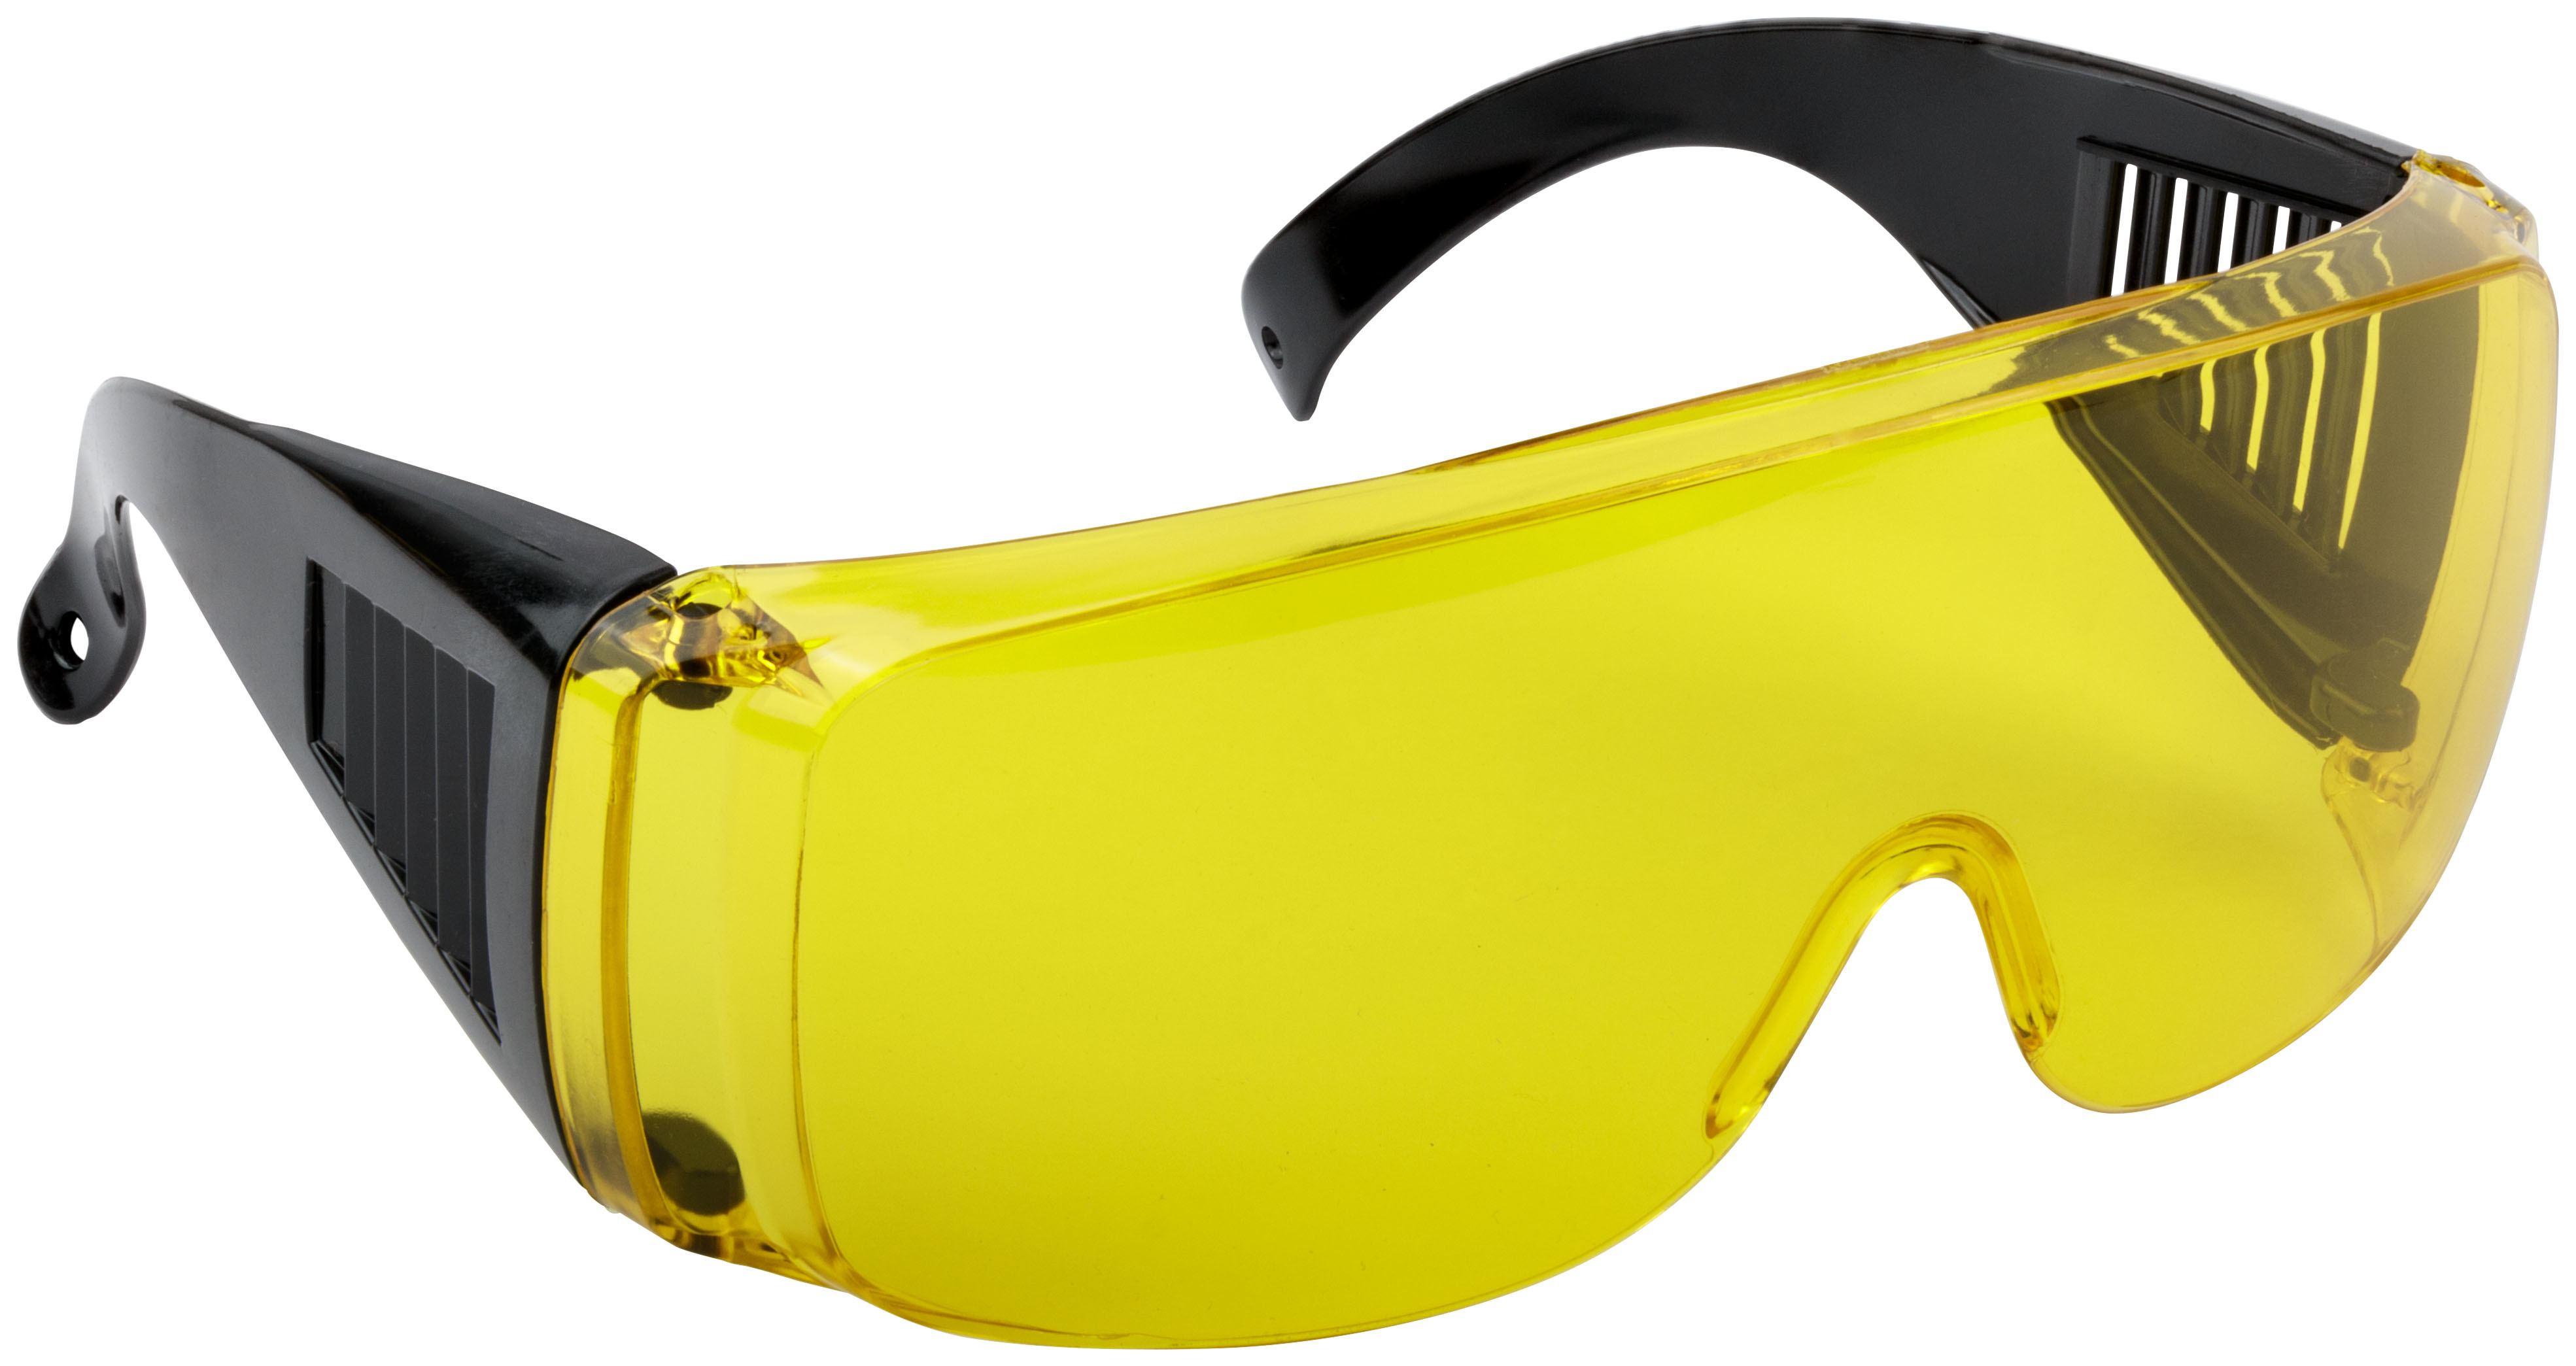 Специальные защитные очки. Очки защитные желтые Fit 12220. Fit очки защитные Fit 12220. Очки защитные Champion с дужками желтые c1008. Очки защитные Fit 12207.